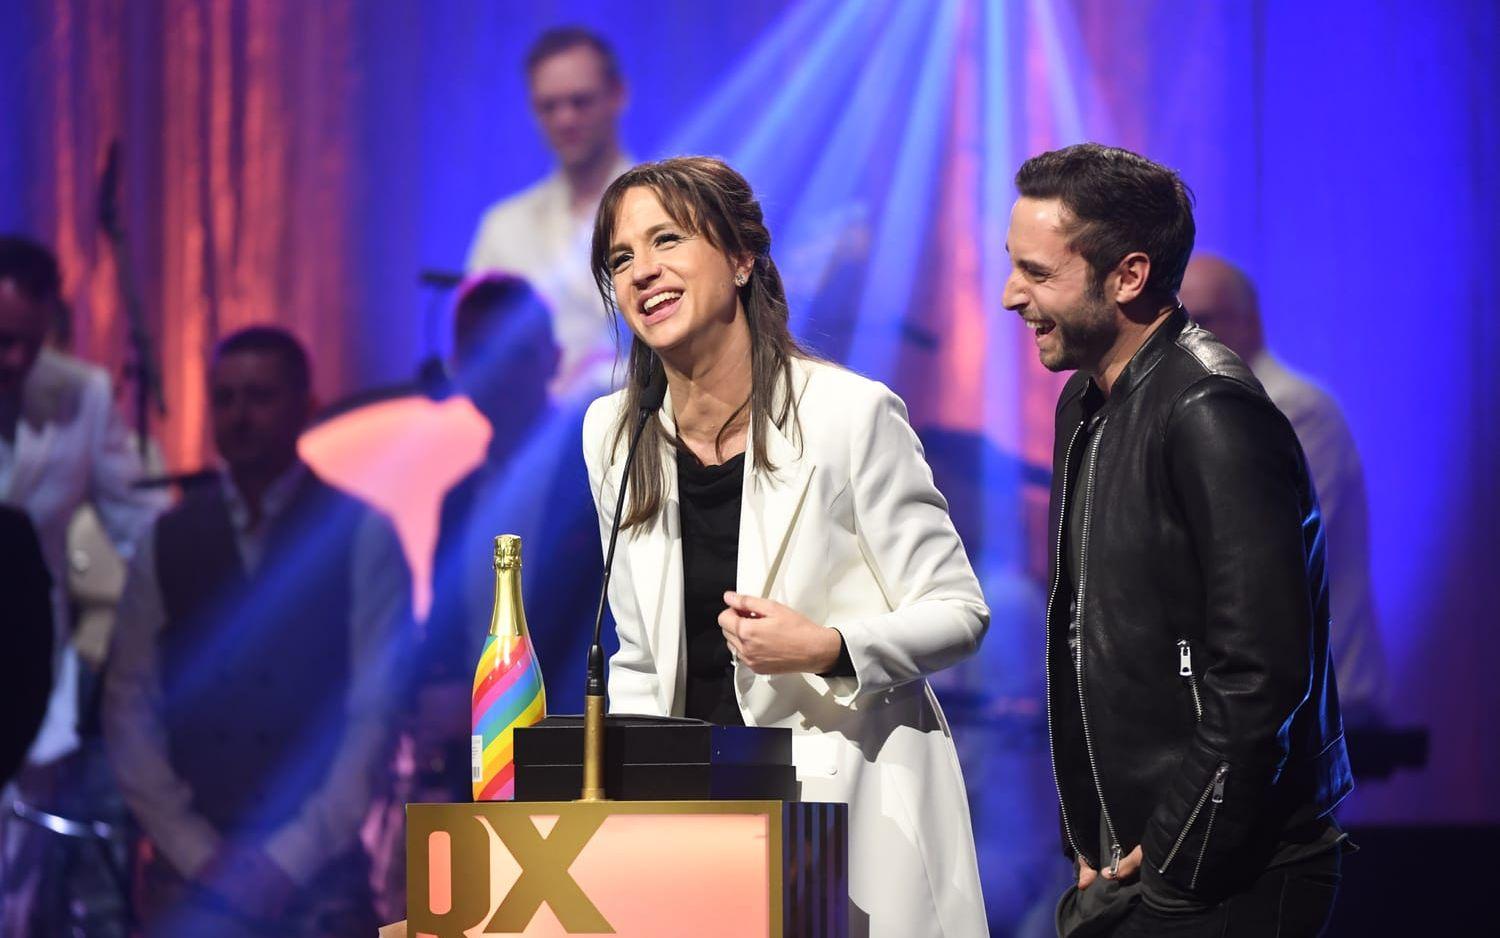 Petra Mede och Måns Zelmerlöw tar emot priset för Årets Duo för deras insats i Eurovision under QX-galan på Cirkus i Stockholm på måndagskvällen. Foto: Fredrik Sandberg / TT